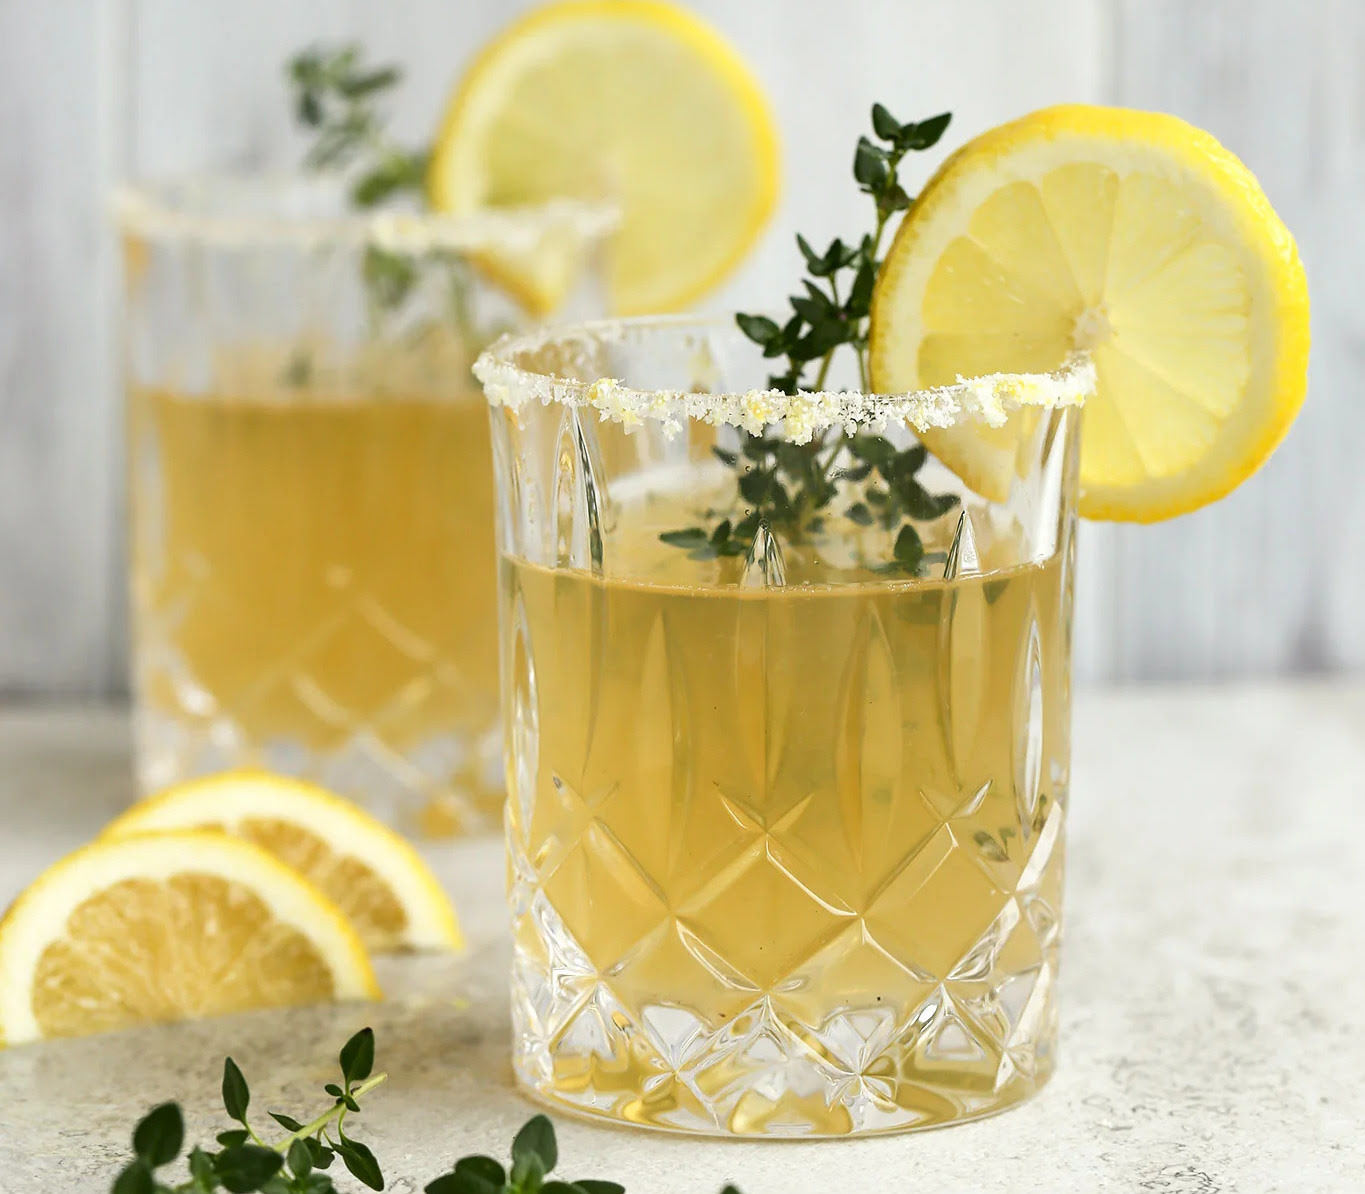 How To Make A Lemon & Thyme Twist